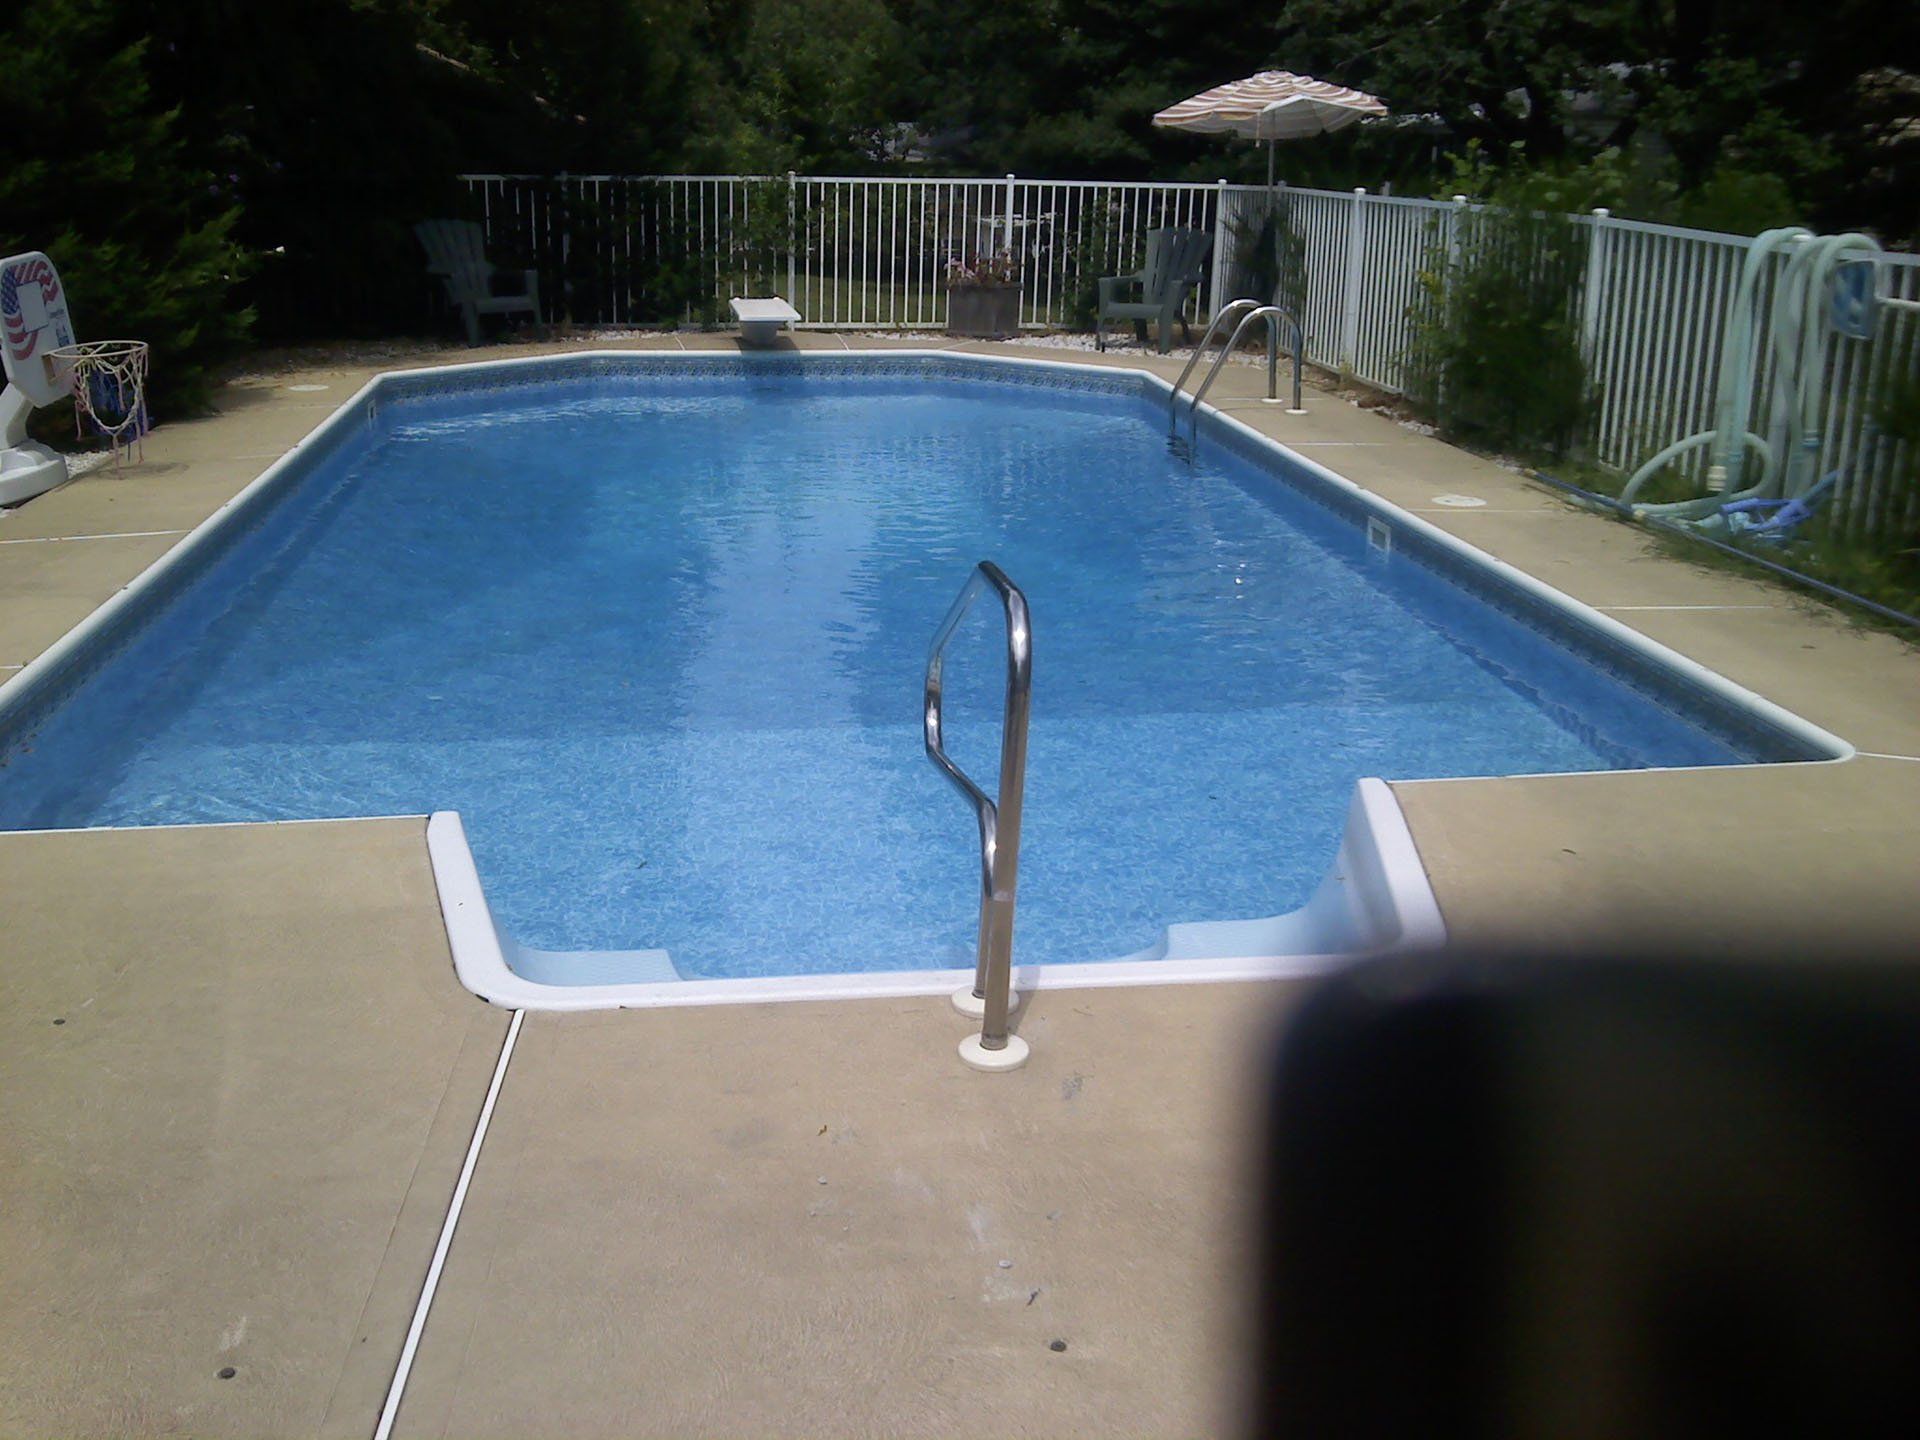 Newly Repair Pool - Pool maintenance in Ocean County, NJ